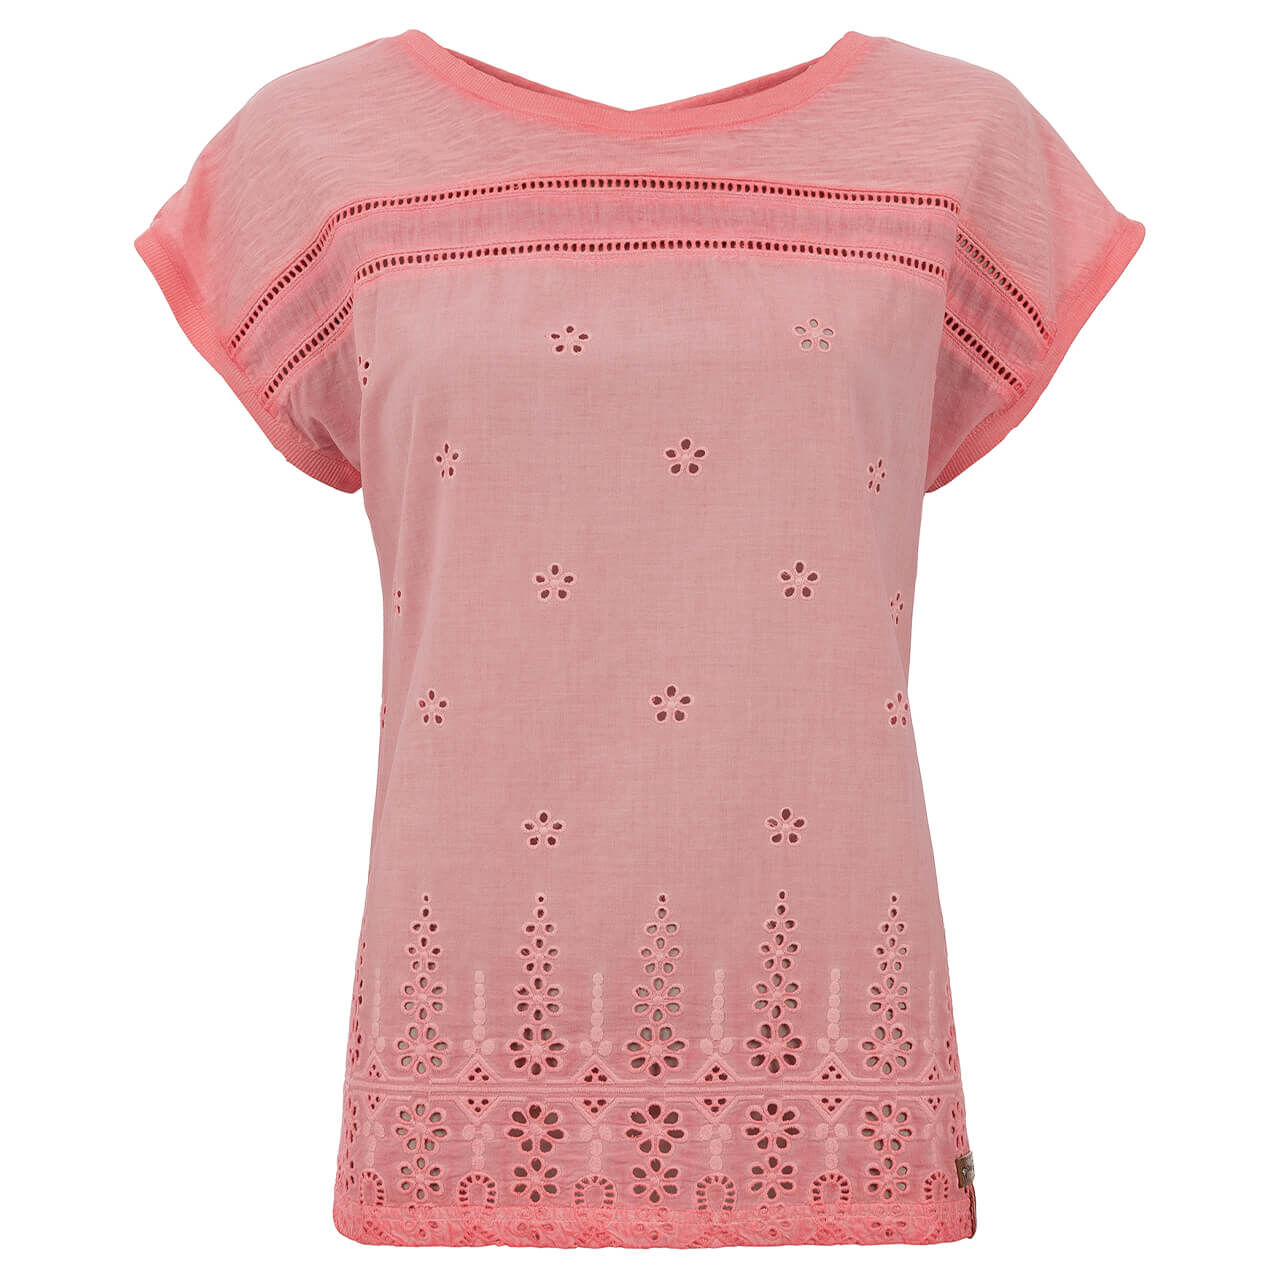 Soquesto T-Shirt für Damen in Rosa, FarbNr.: 1301